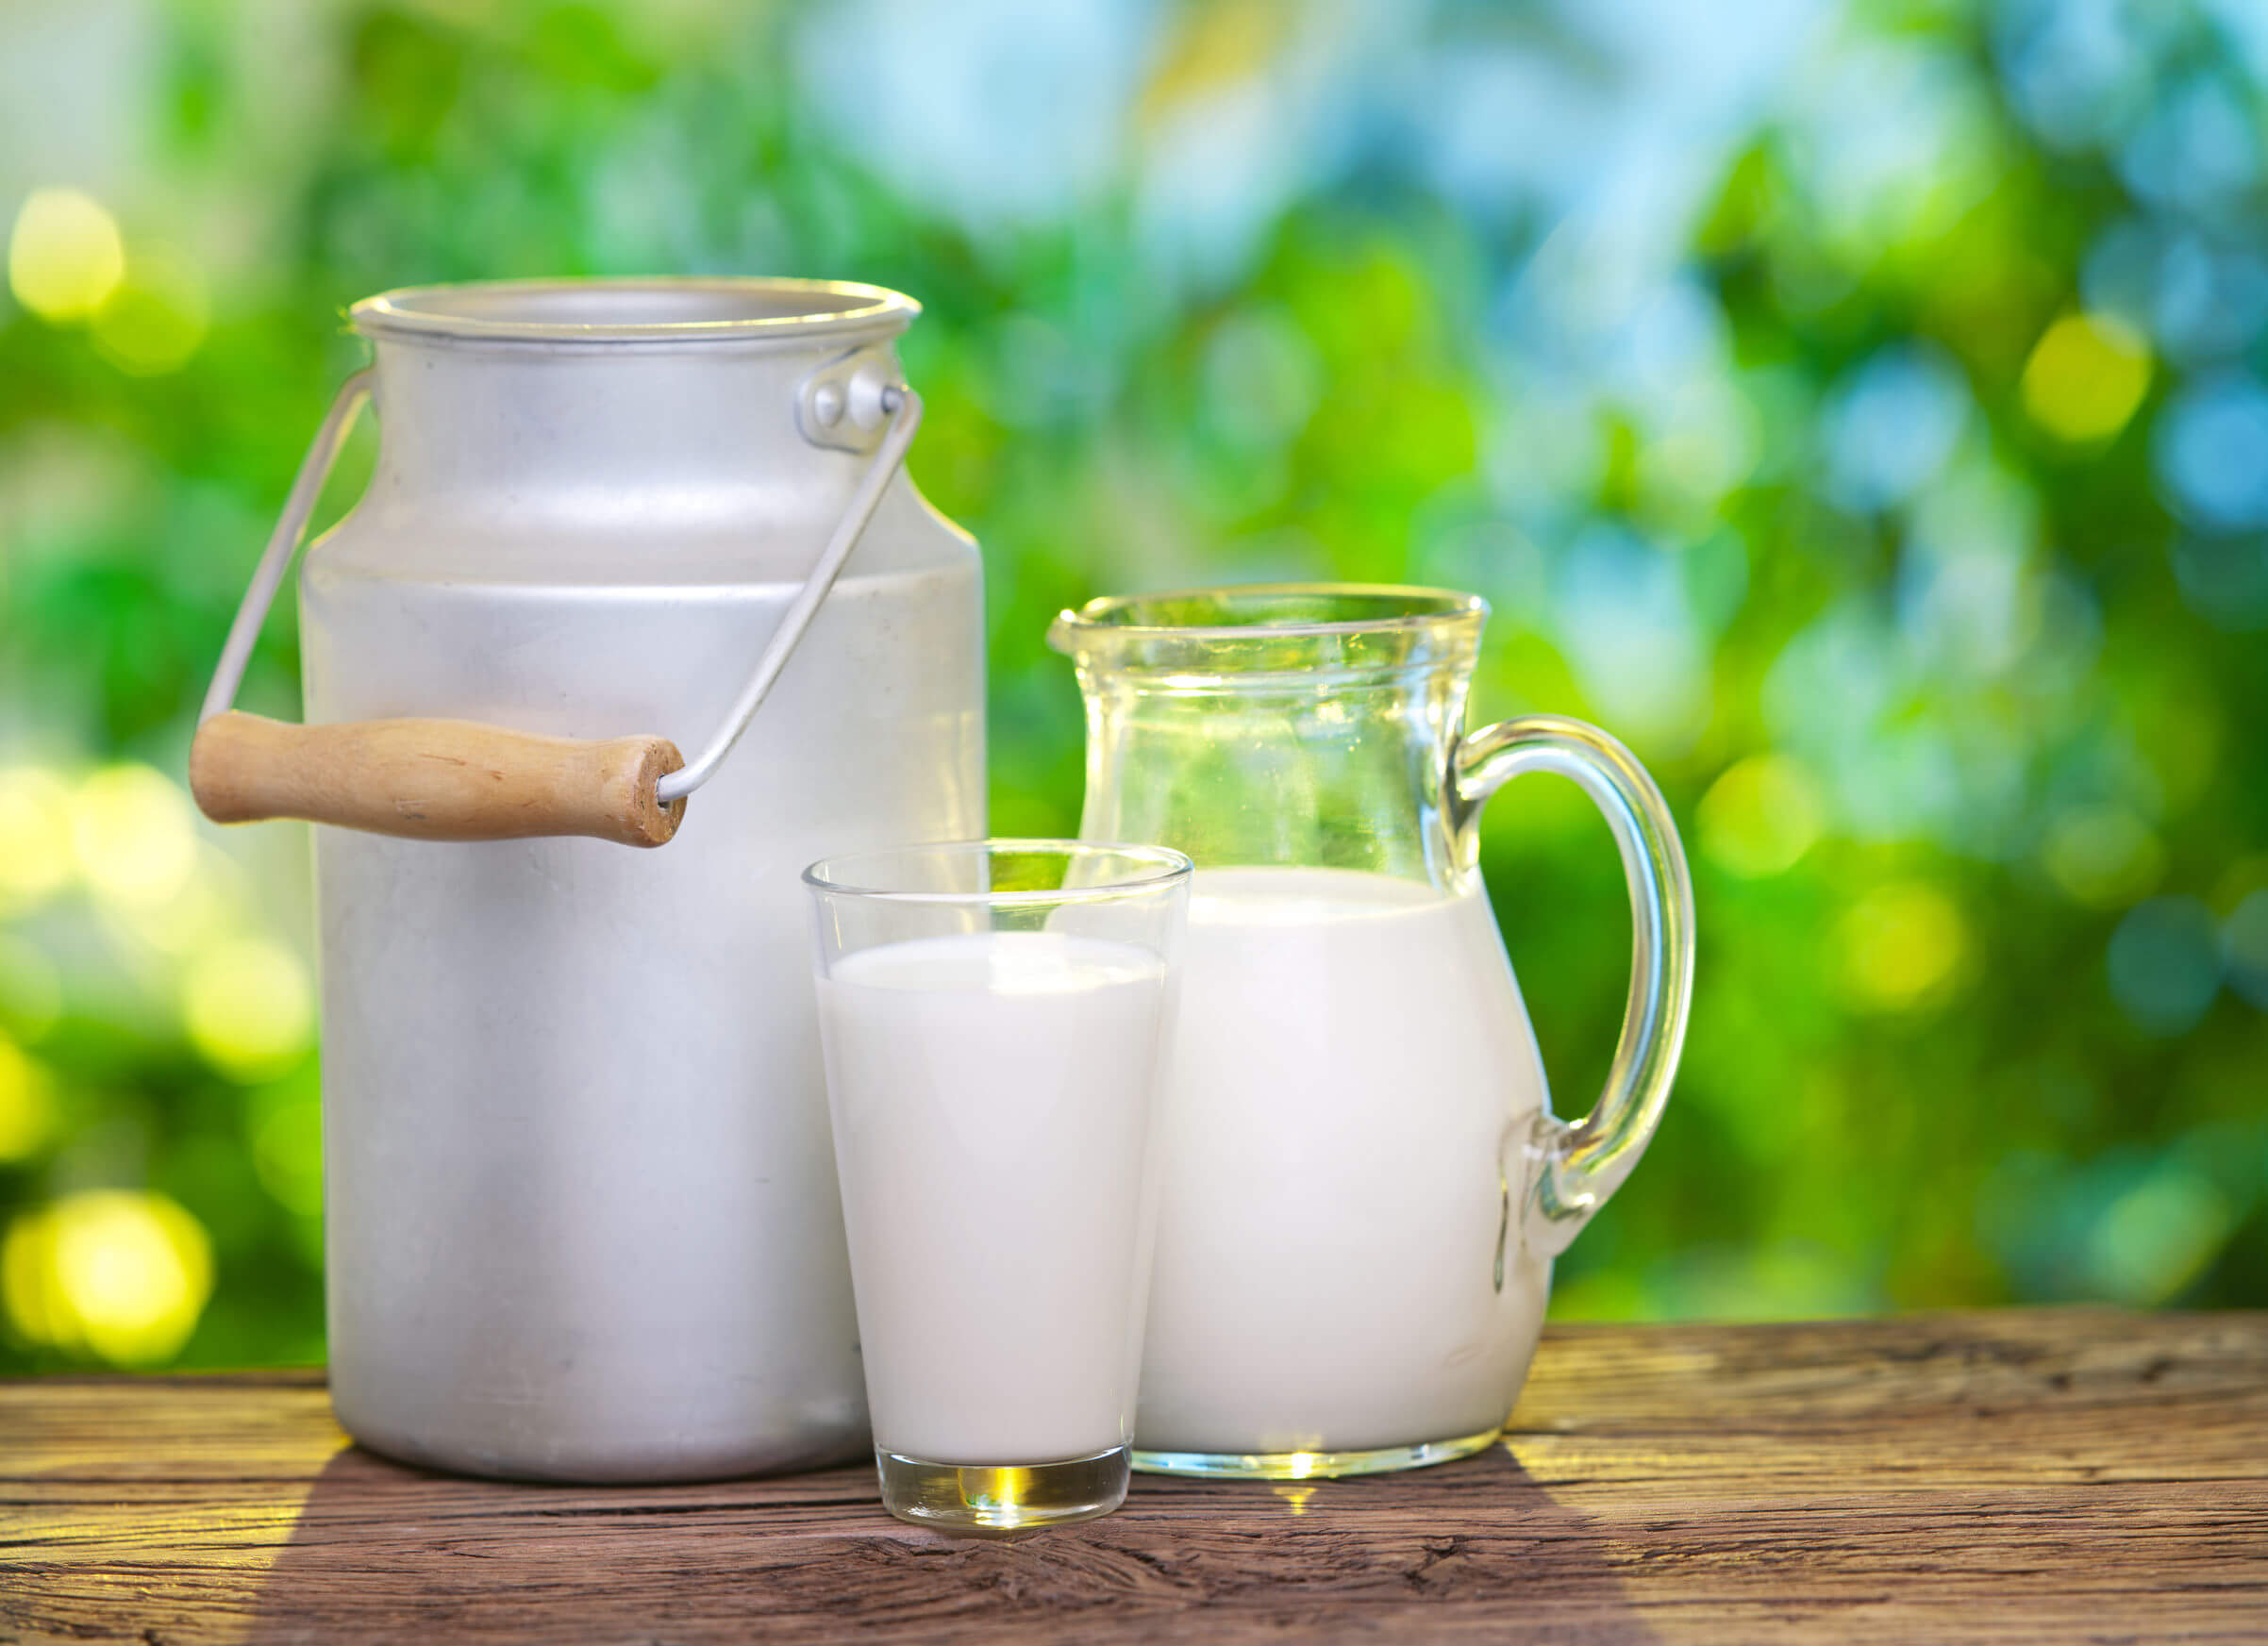 Los alimentos que pueden causar diarrea incluyen los lácteos